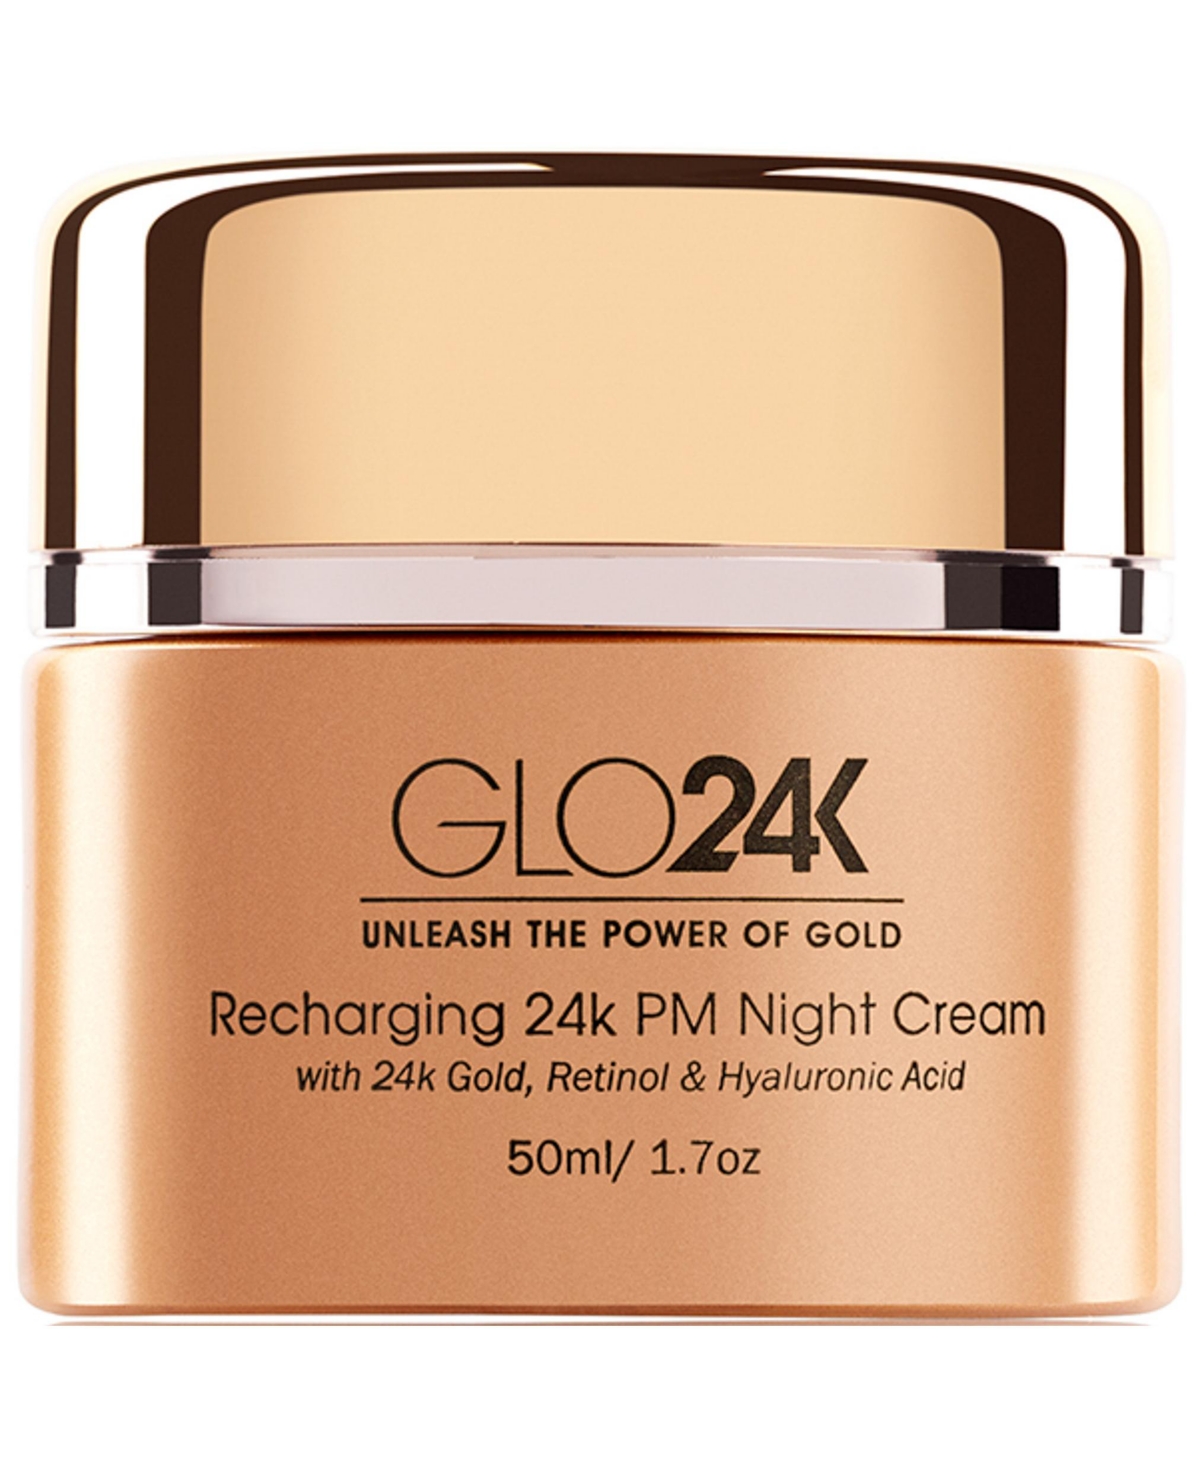 Regenerating 24K Pm Night Cream 1.7oz